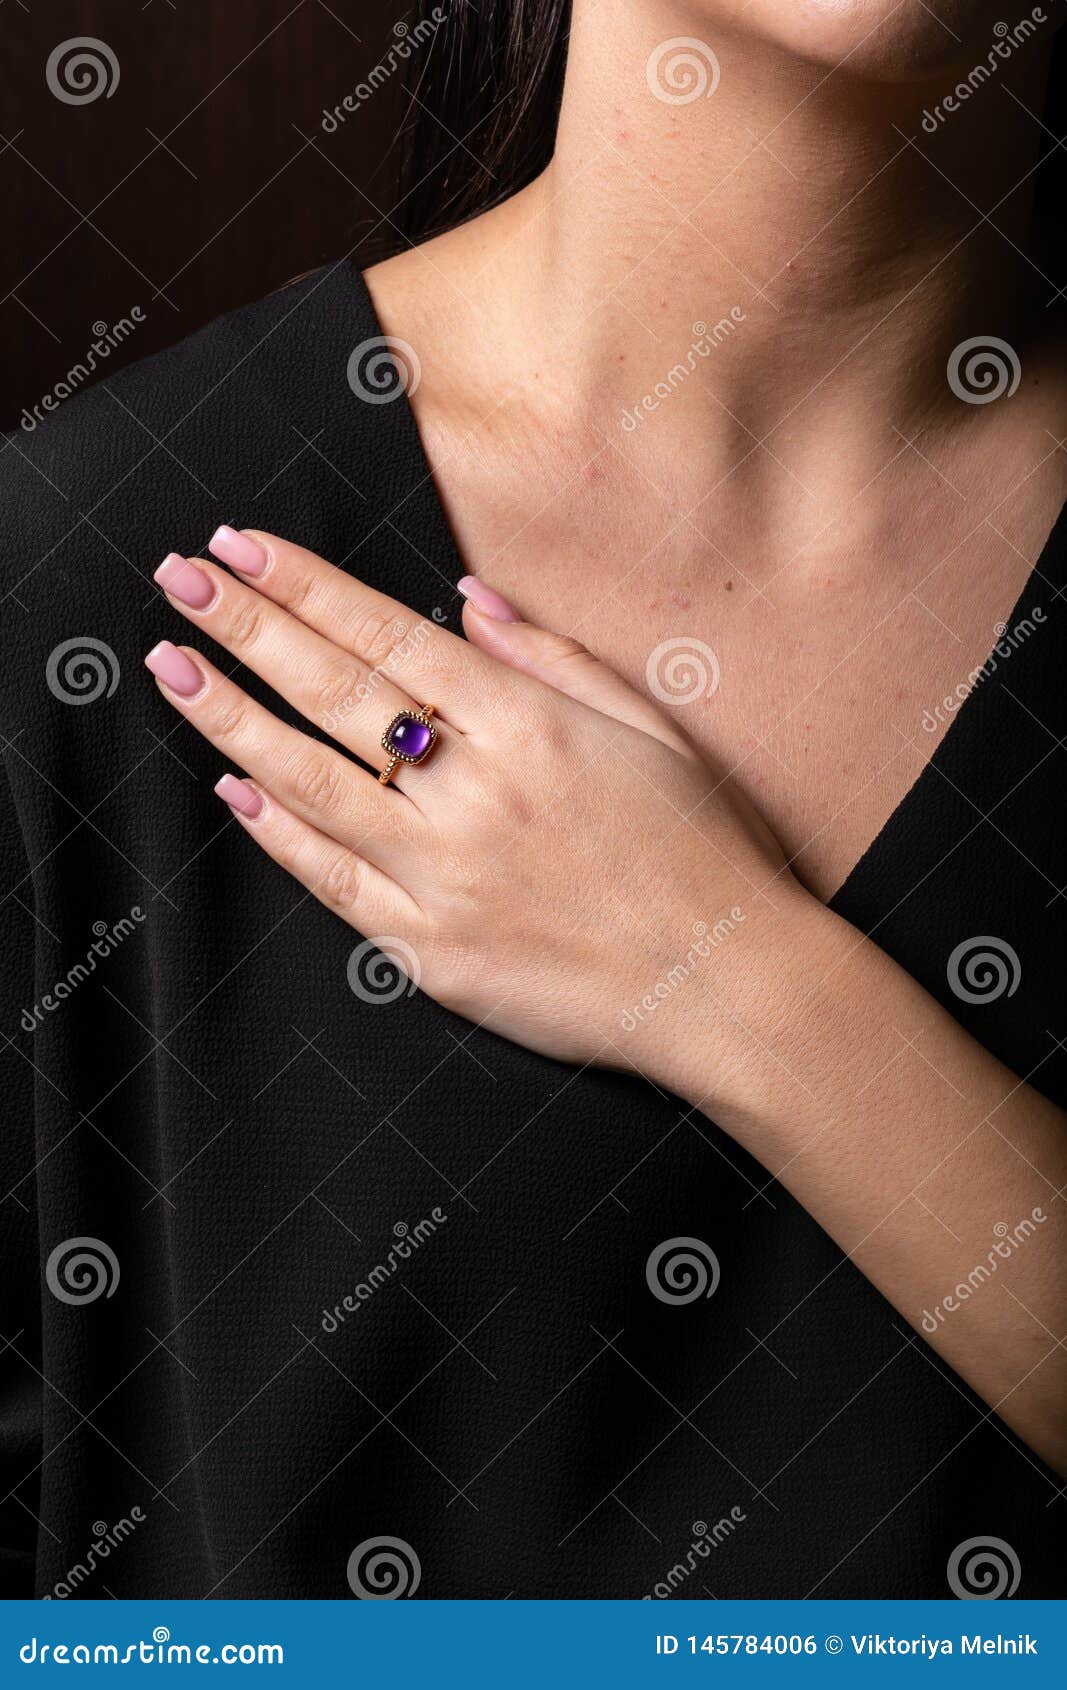 gold ring designs indian Men & Women engagement gold ring designs,gold ring,jewelry,Women  Latest Gol | Anillos de moda, Anillos de joyería, Anillos de compromiso